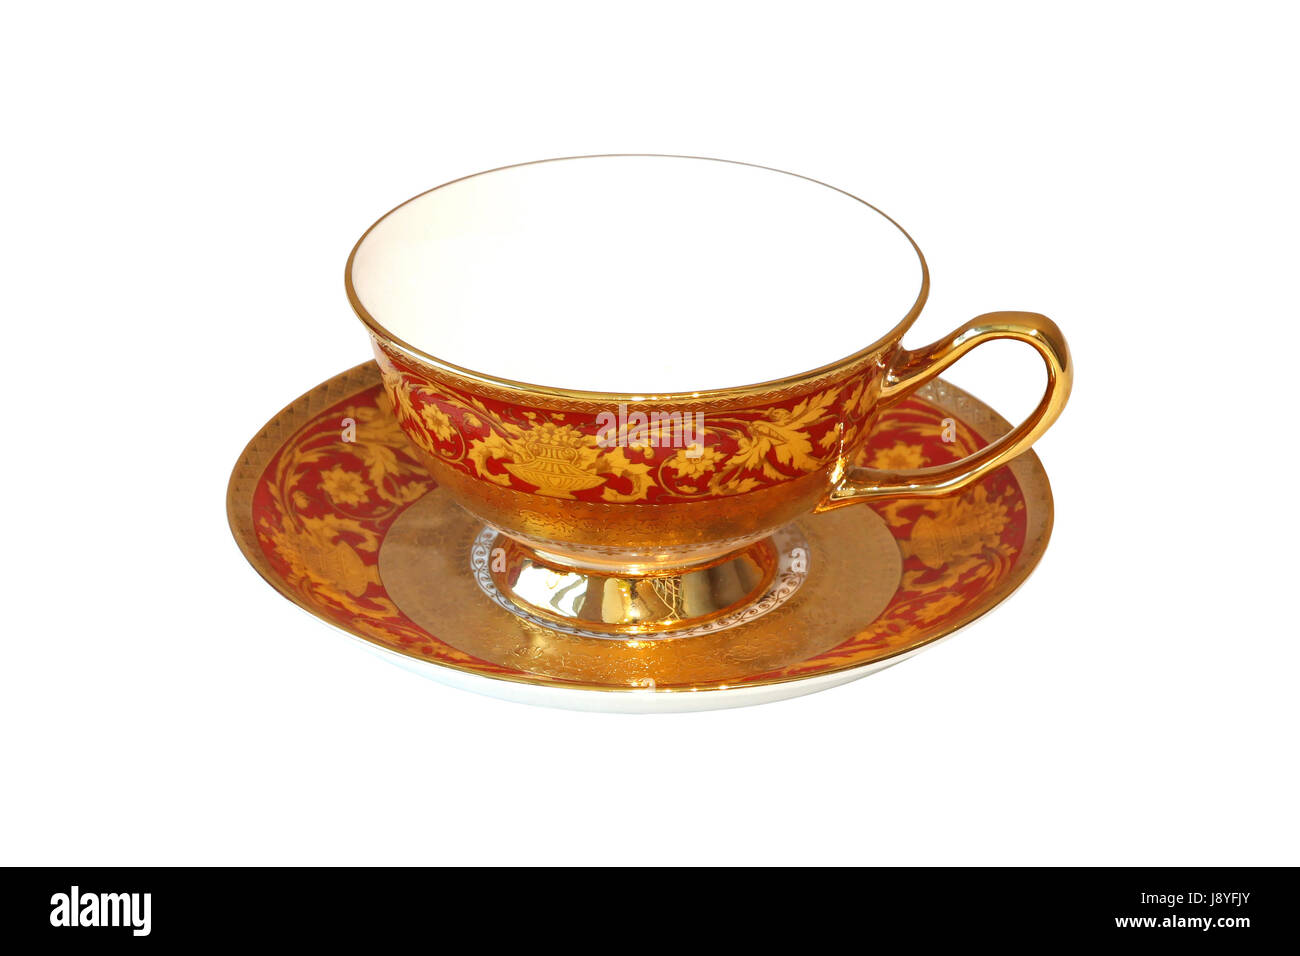 NEW L'Objet Mythologie Saucer 24k Gold/Rose Gold Limoges Porcelain Greek Design 